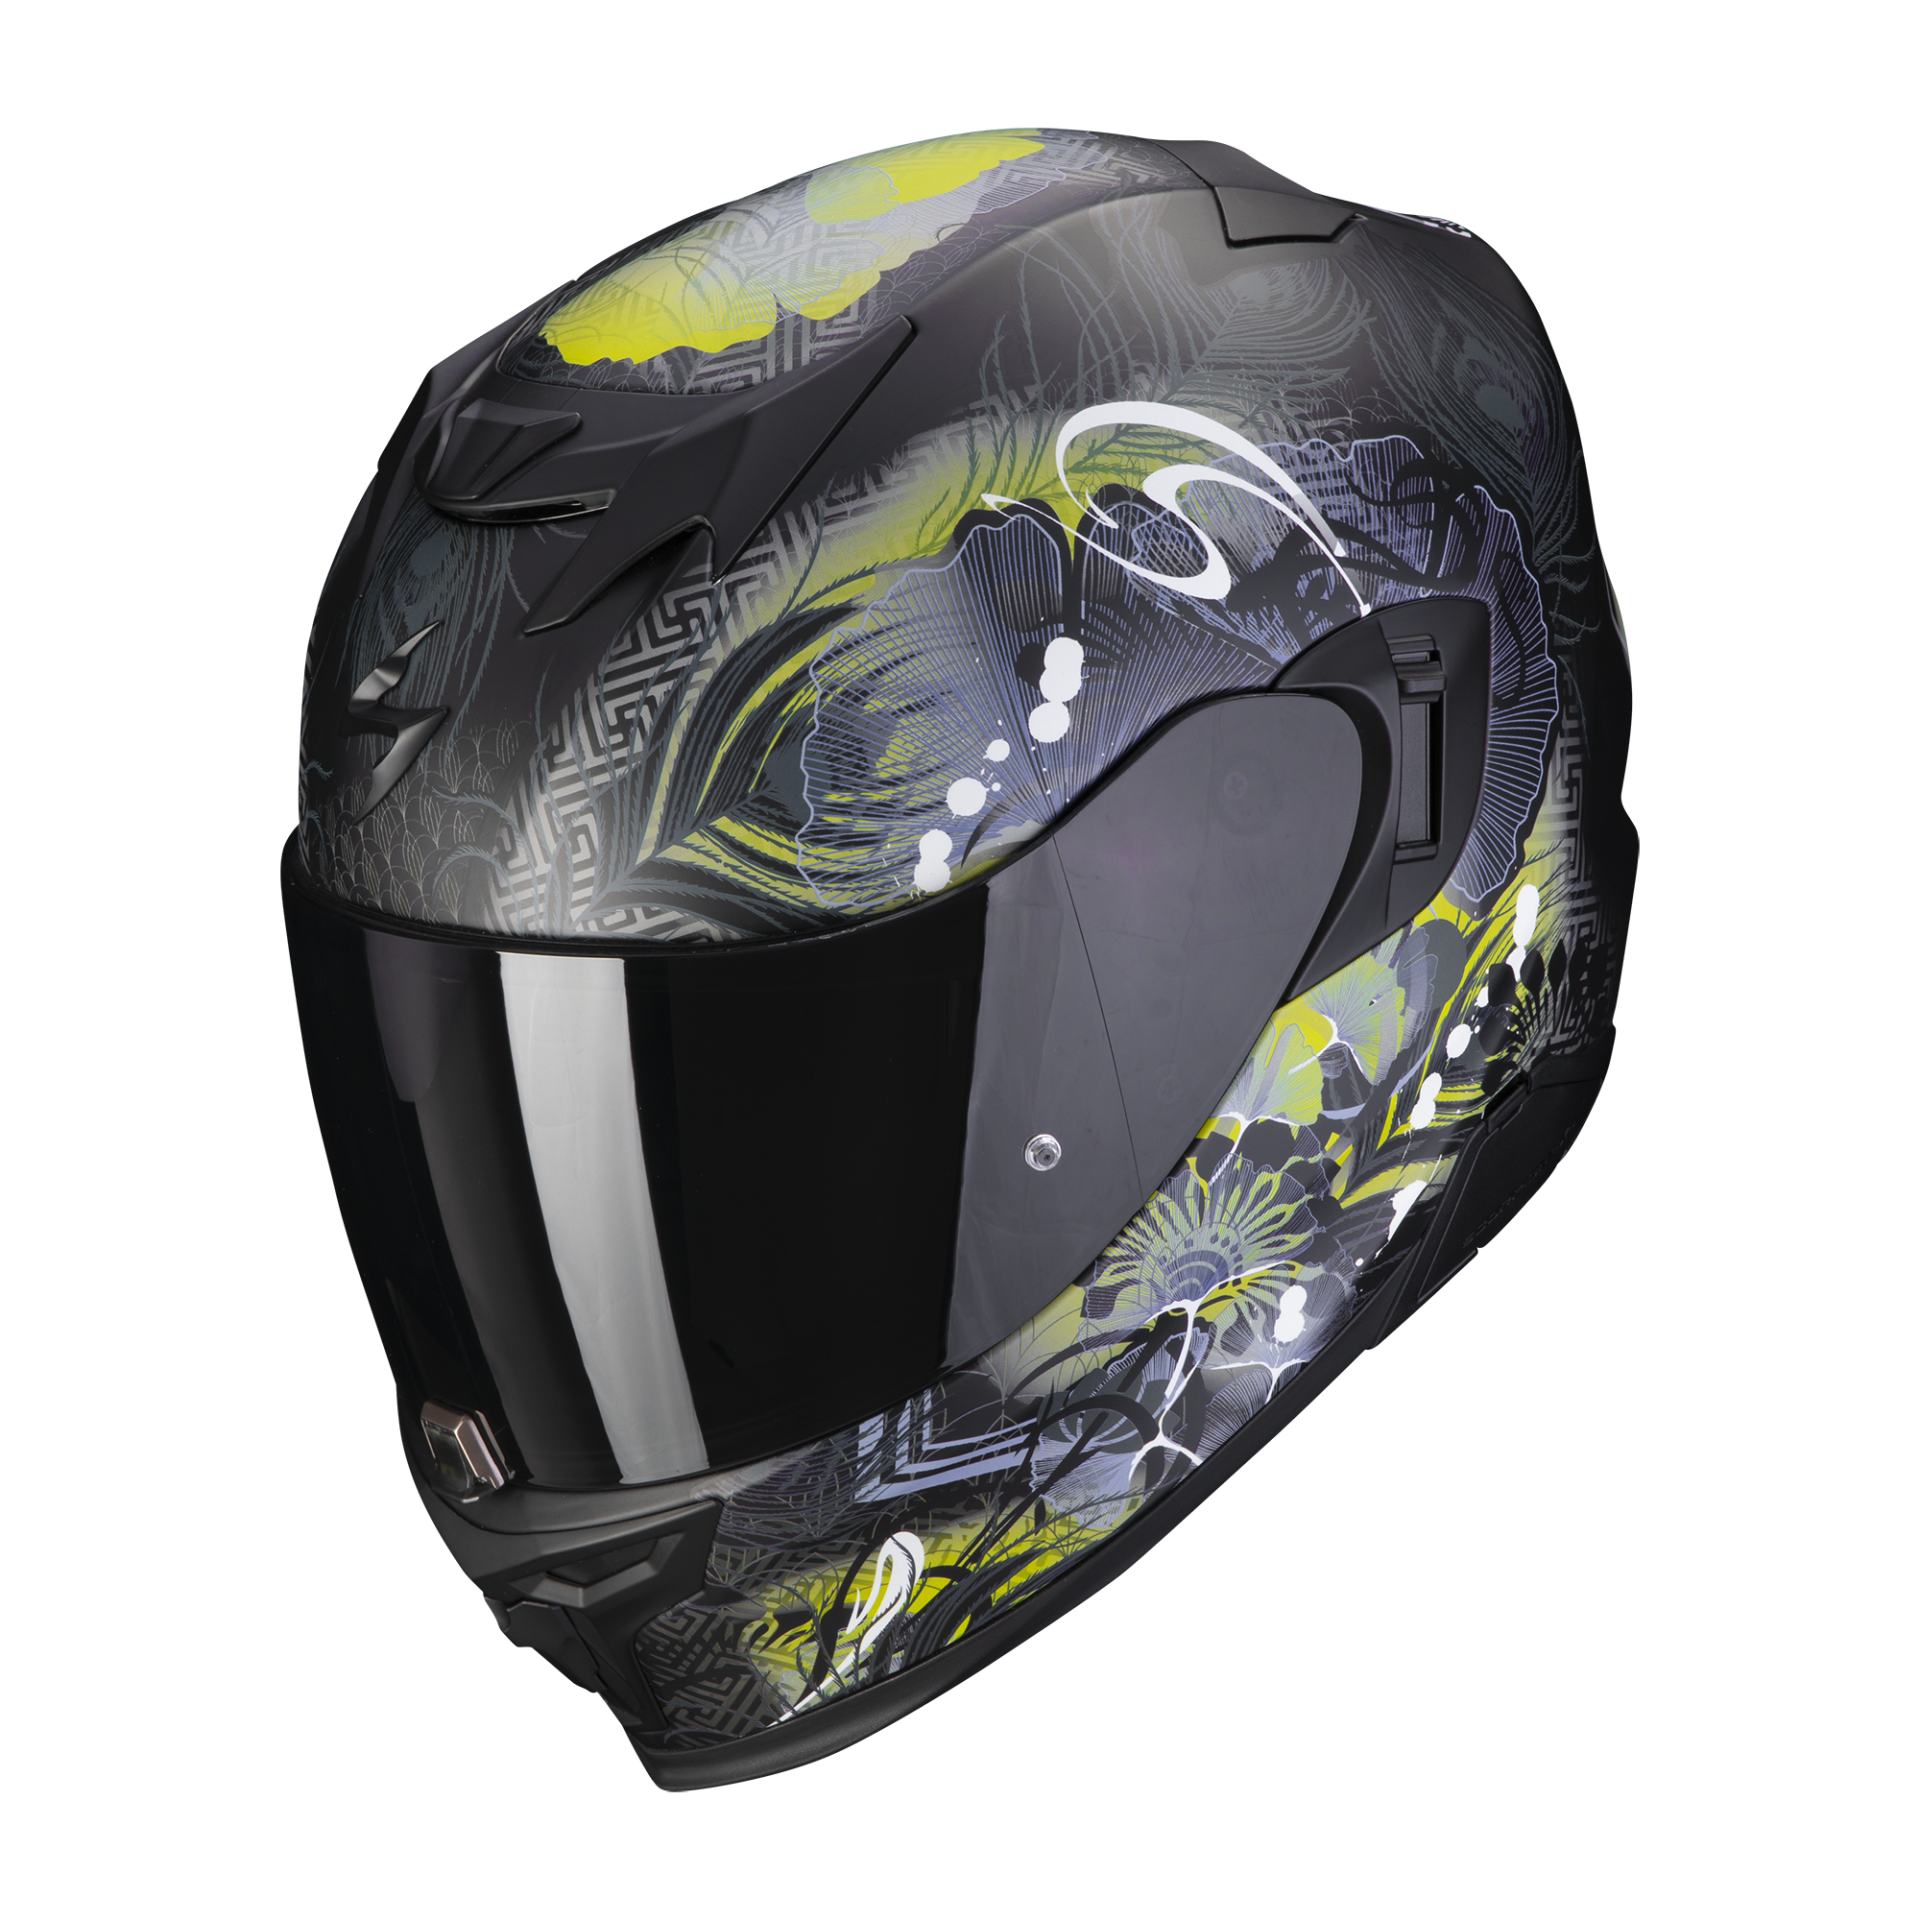 Image of Scorpion Exo-520 Evo Air Melrose Matt Black-Yellow Full Face Helmet Size L EN